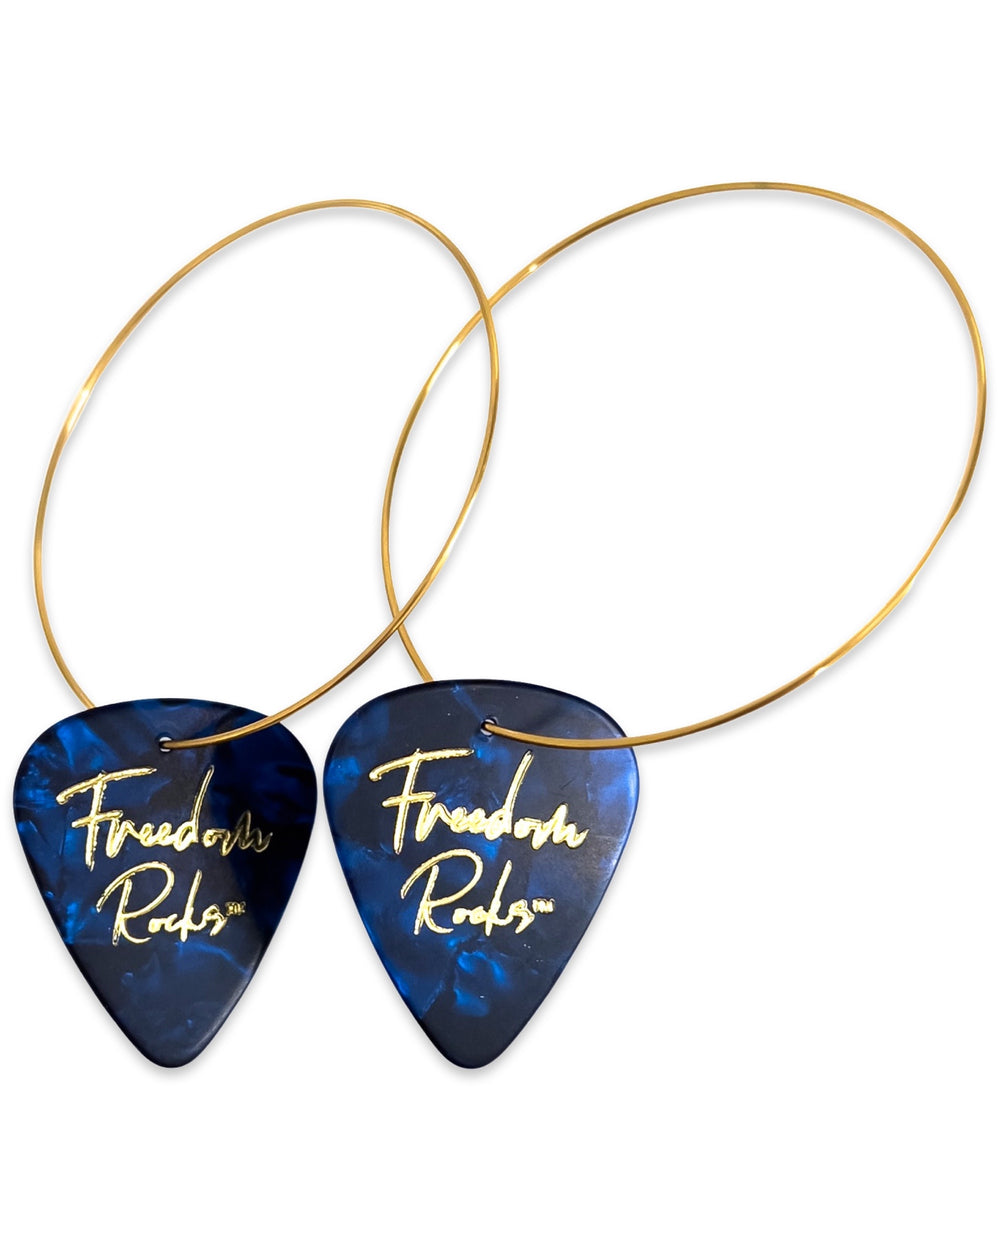 WS Freedom Rocks Blue Reversible Single Guitar Pick Earrings